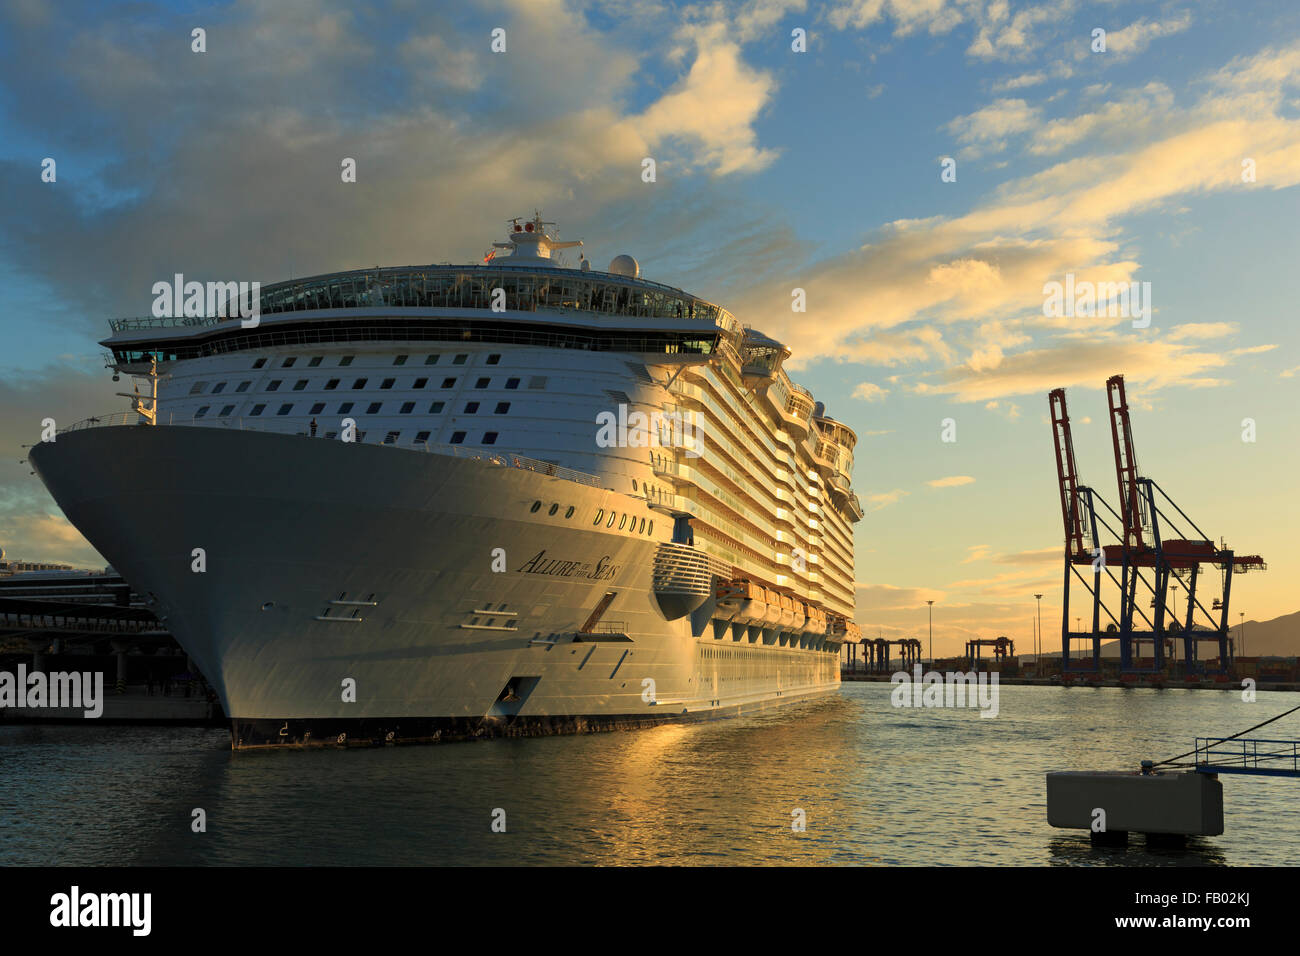 Allure Of The Seas Cruise Ship, Port of Malaga, Andalusia, Spain, Europe Stock Photo